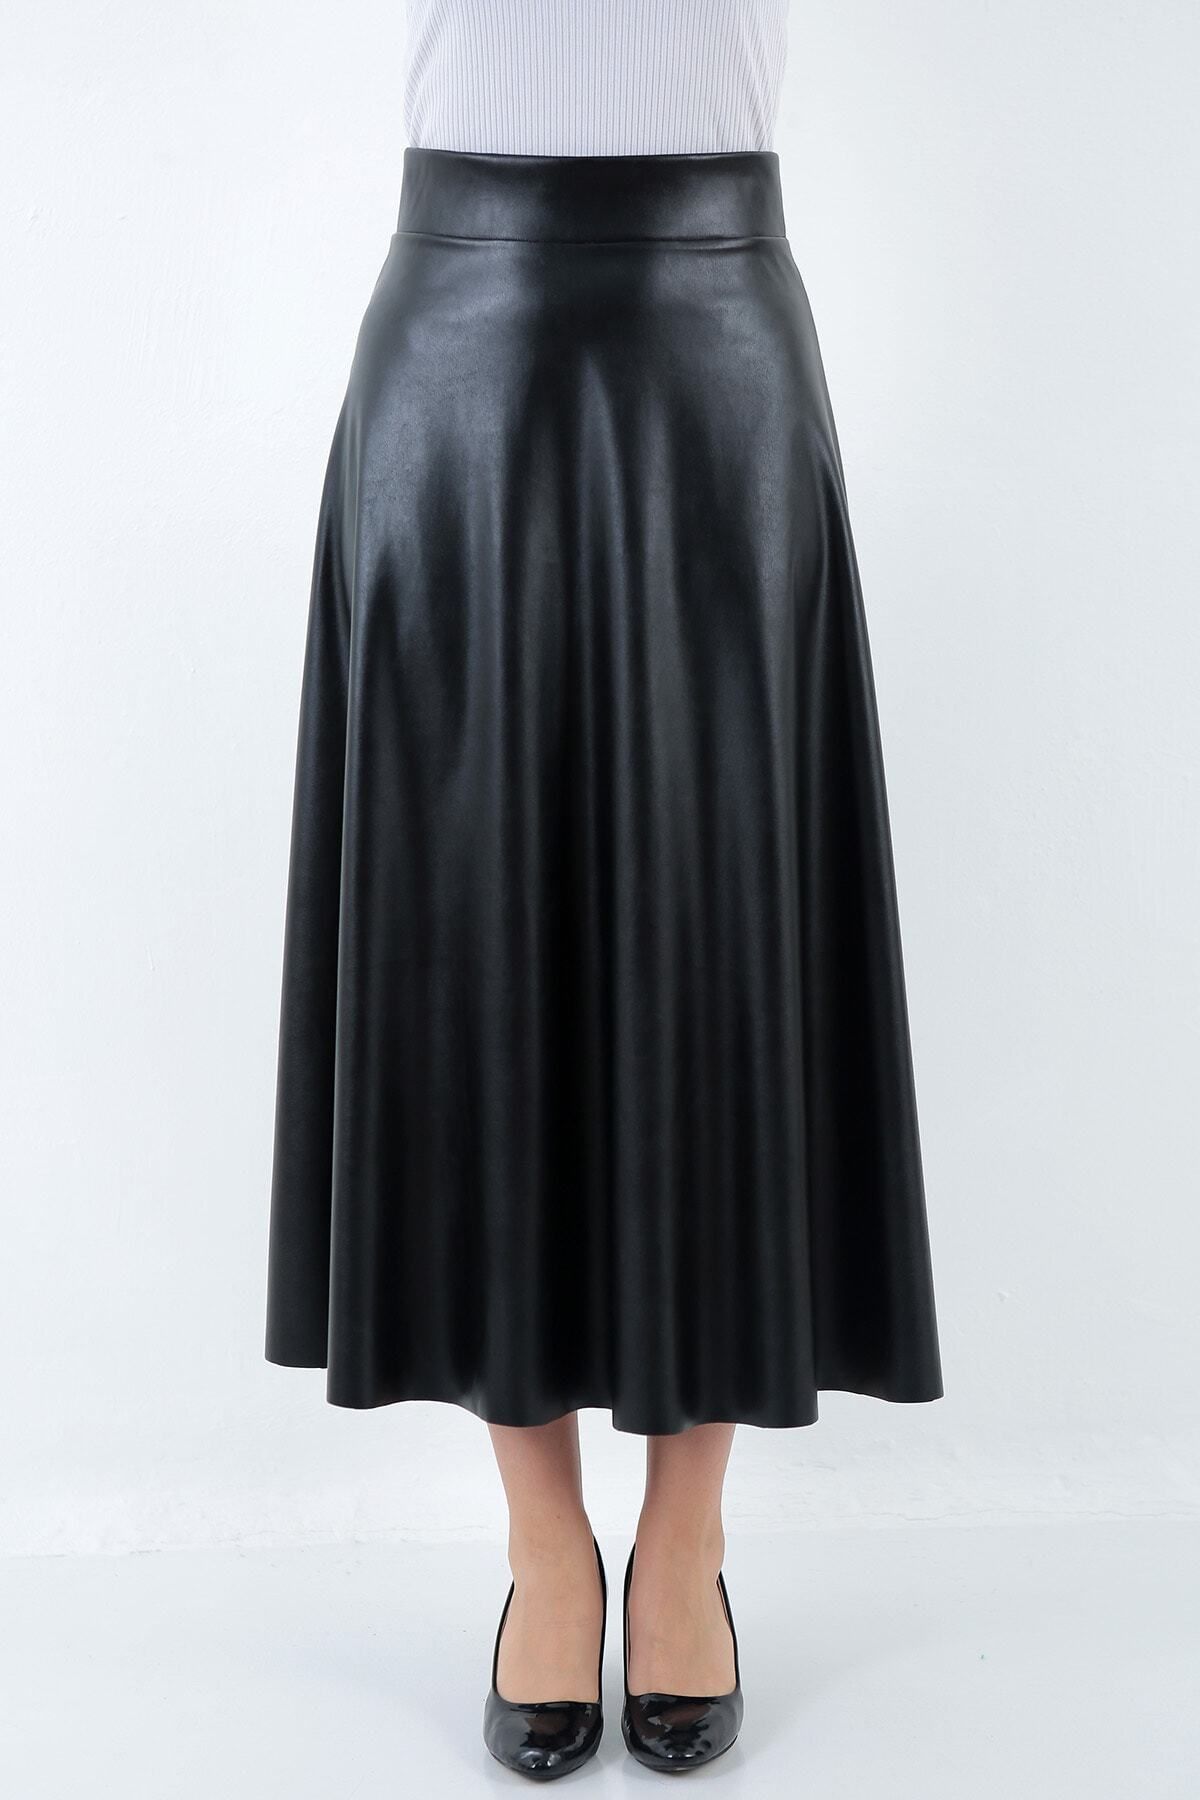 WAYS Kadın Suni Deri Siyah Uzun Tesettür Kloş Mevlana Etek Faux Leather